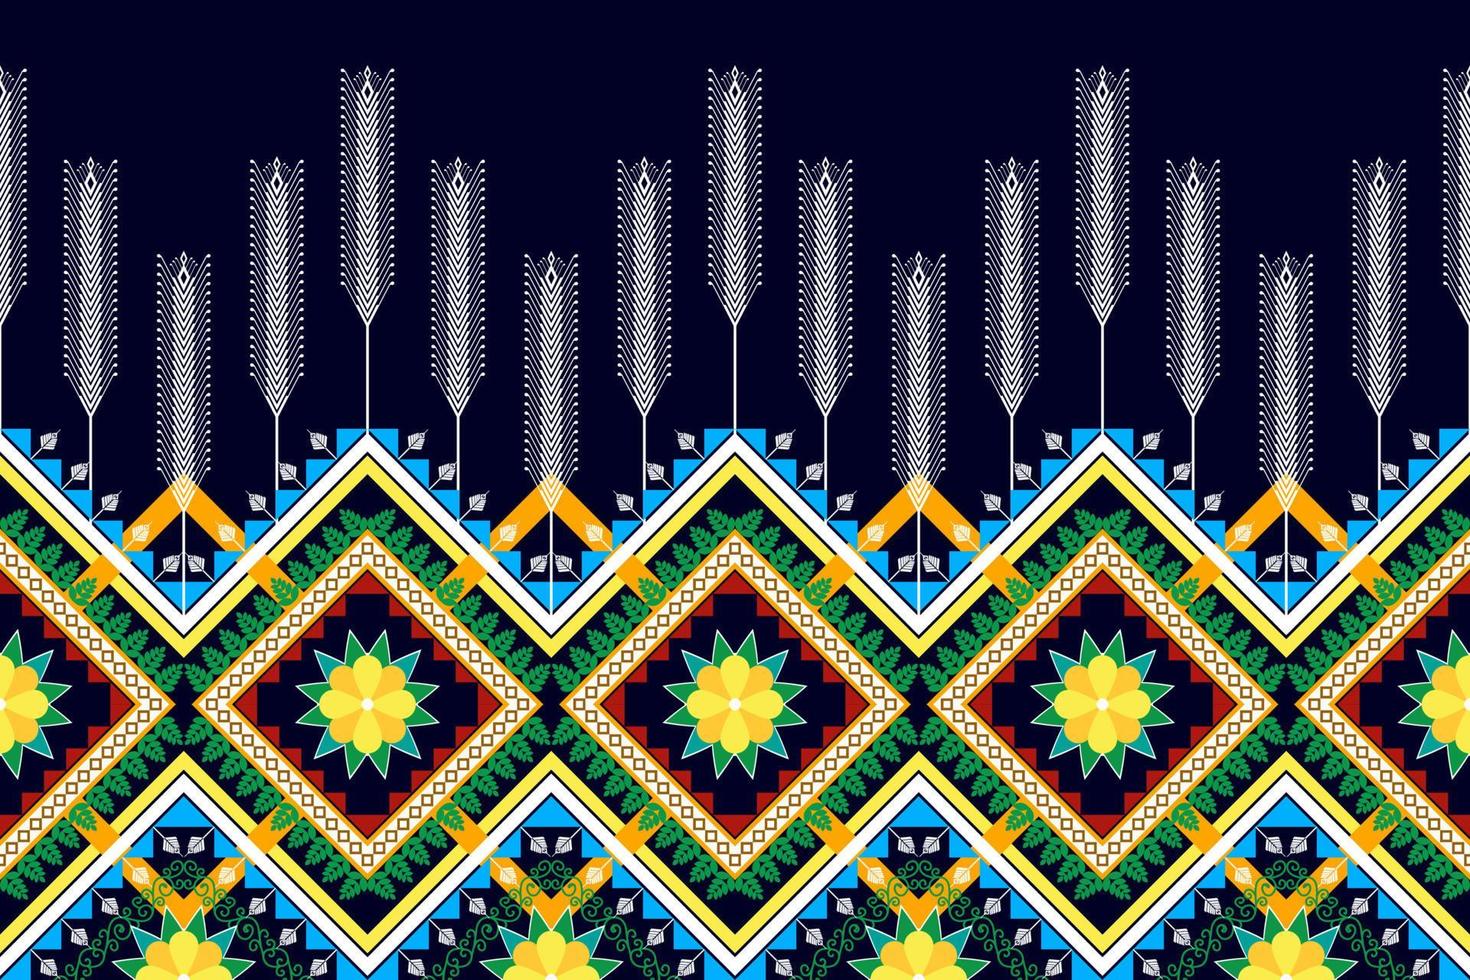 conception de modèle sans couture ethnique floral. tapis en tissu aztèque ornement mandala chevron décoration textile papier peint. dinde tribale broderie traditionnelle indienne africaine fond d'illustrations vectorielles vecteur